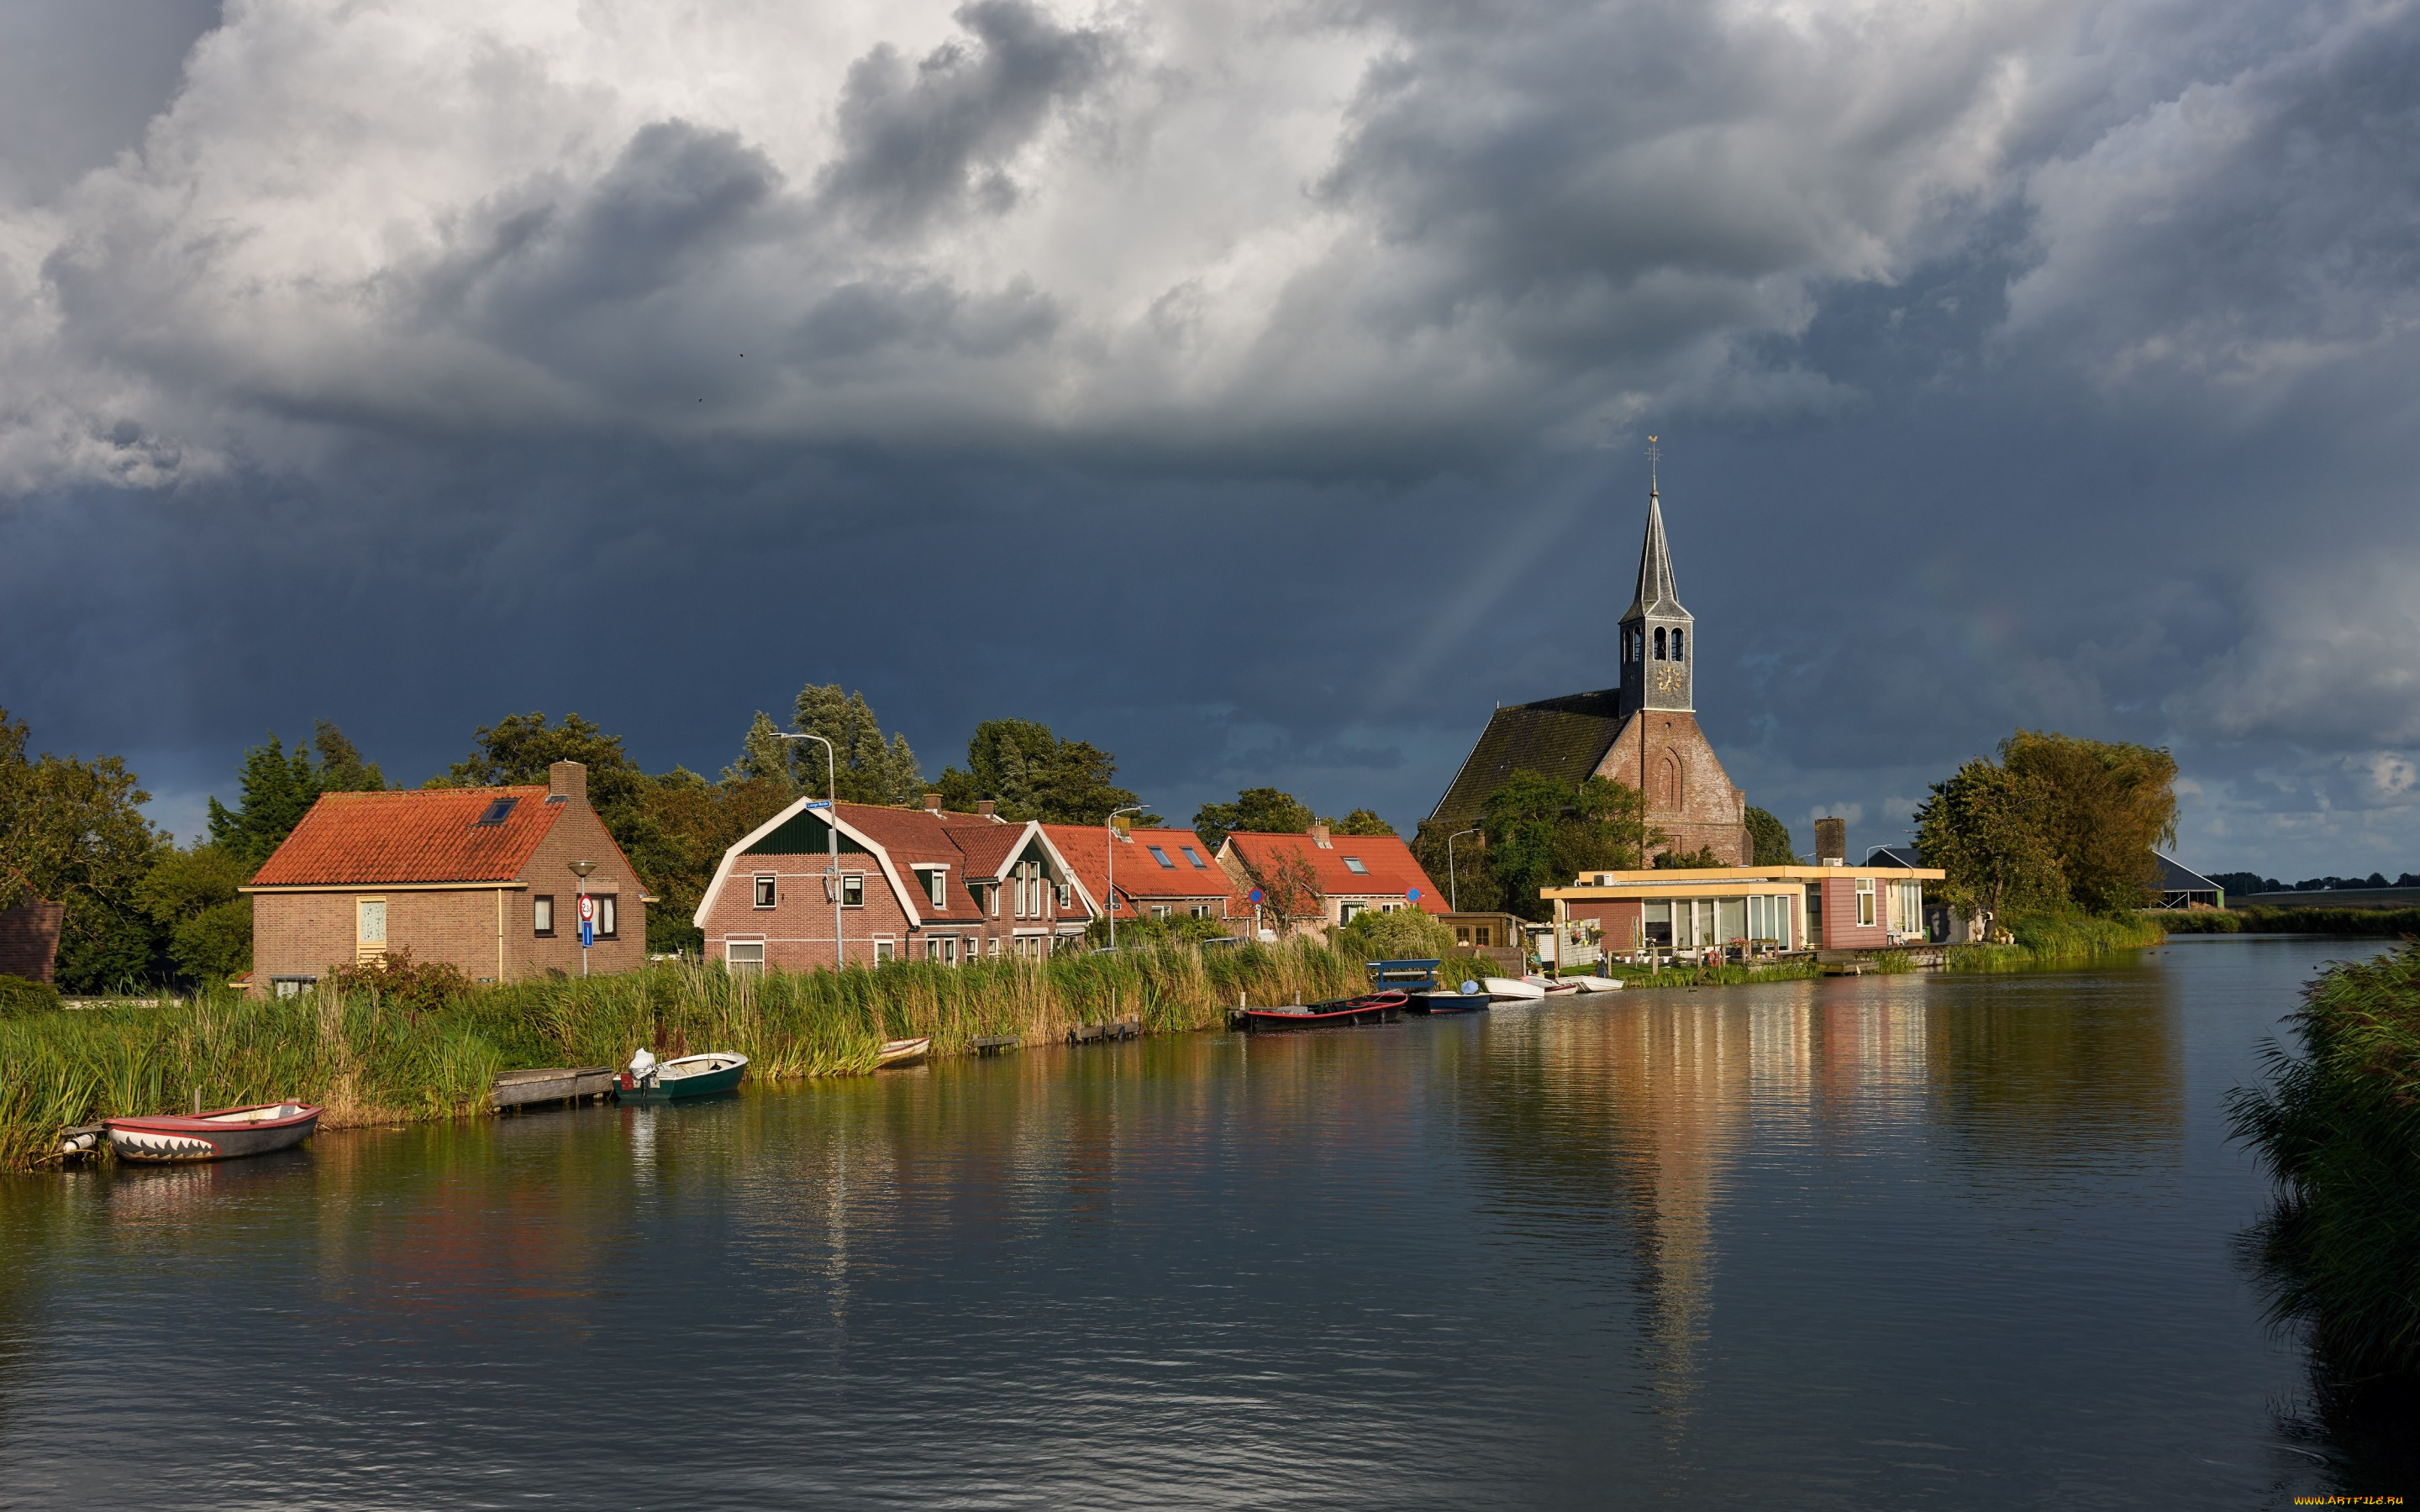 города, -, пейзажи, облака, река, нидерланды, церковь, oudendijk, дома, солнце, небо, камыши, деревья, лодки, тучи